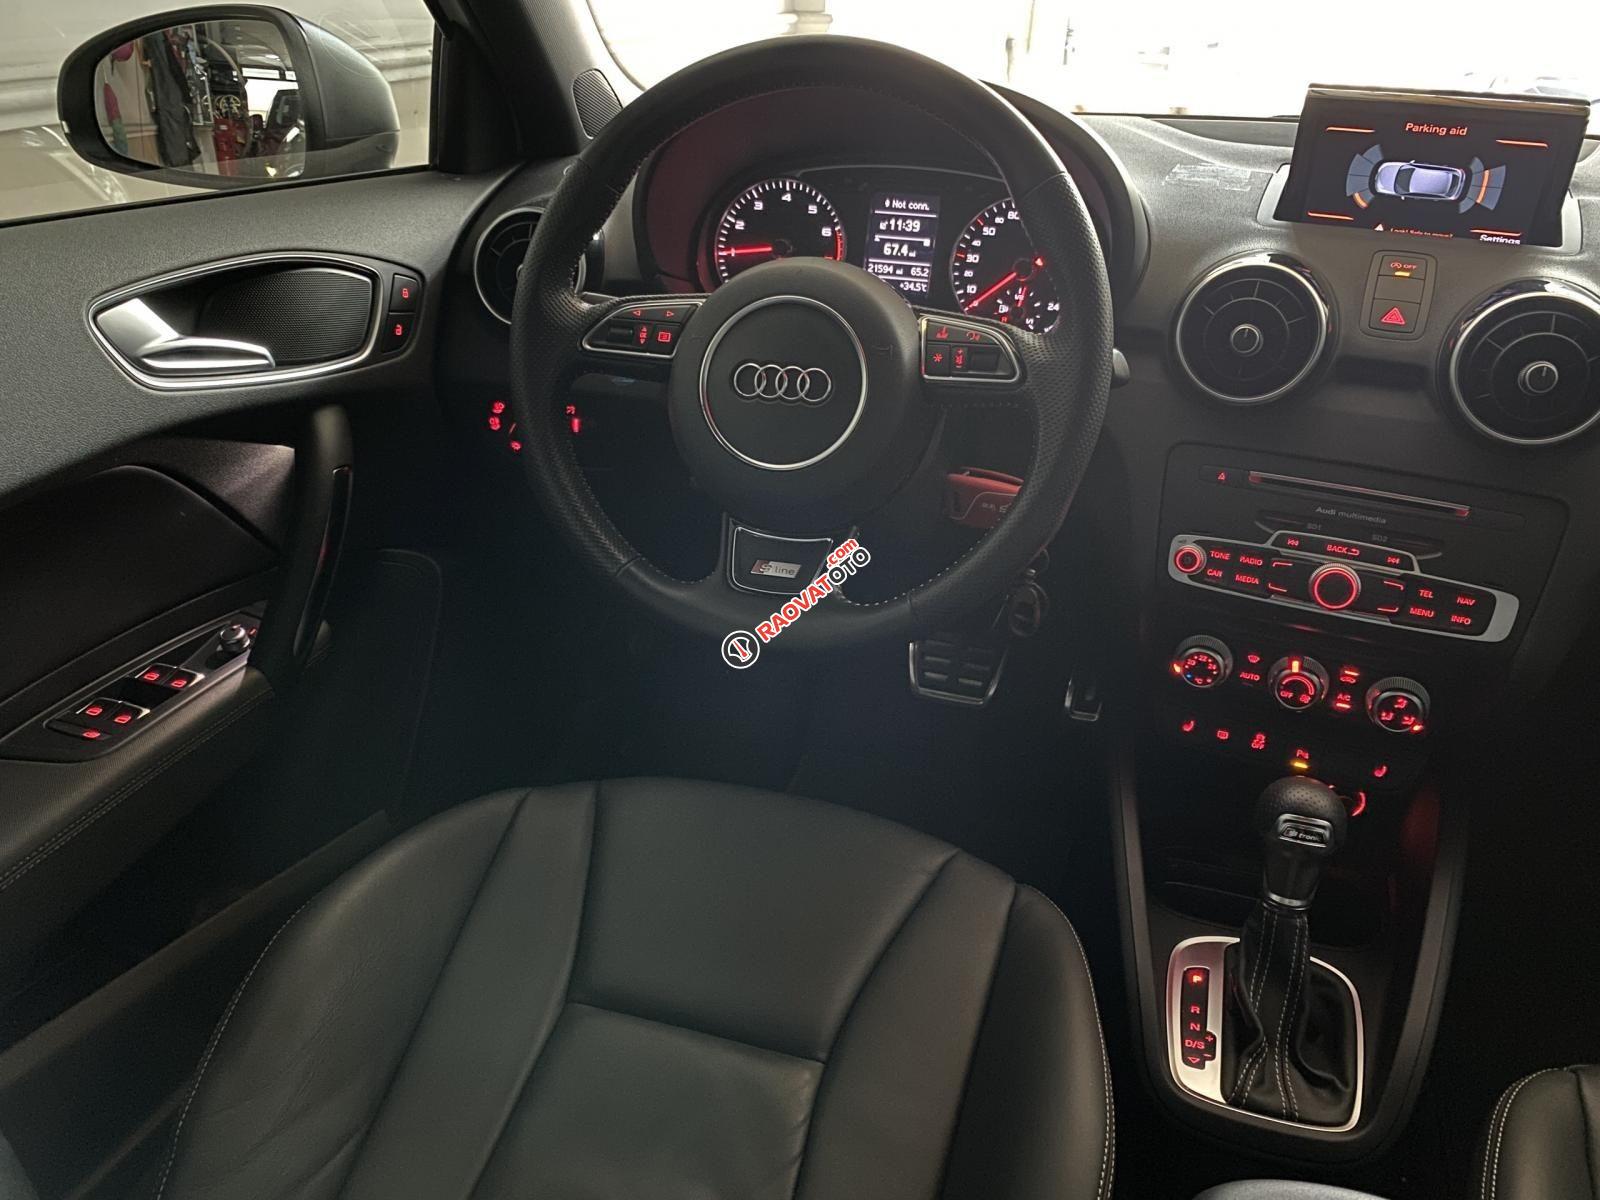 Bán xe Audi A1 bản Sline năm 2015, siêu lướt 21.000km nội thất đen zin nguyên bản, option miên man-4